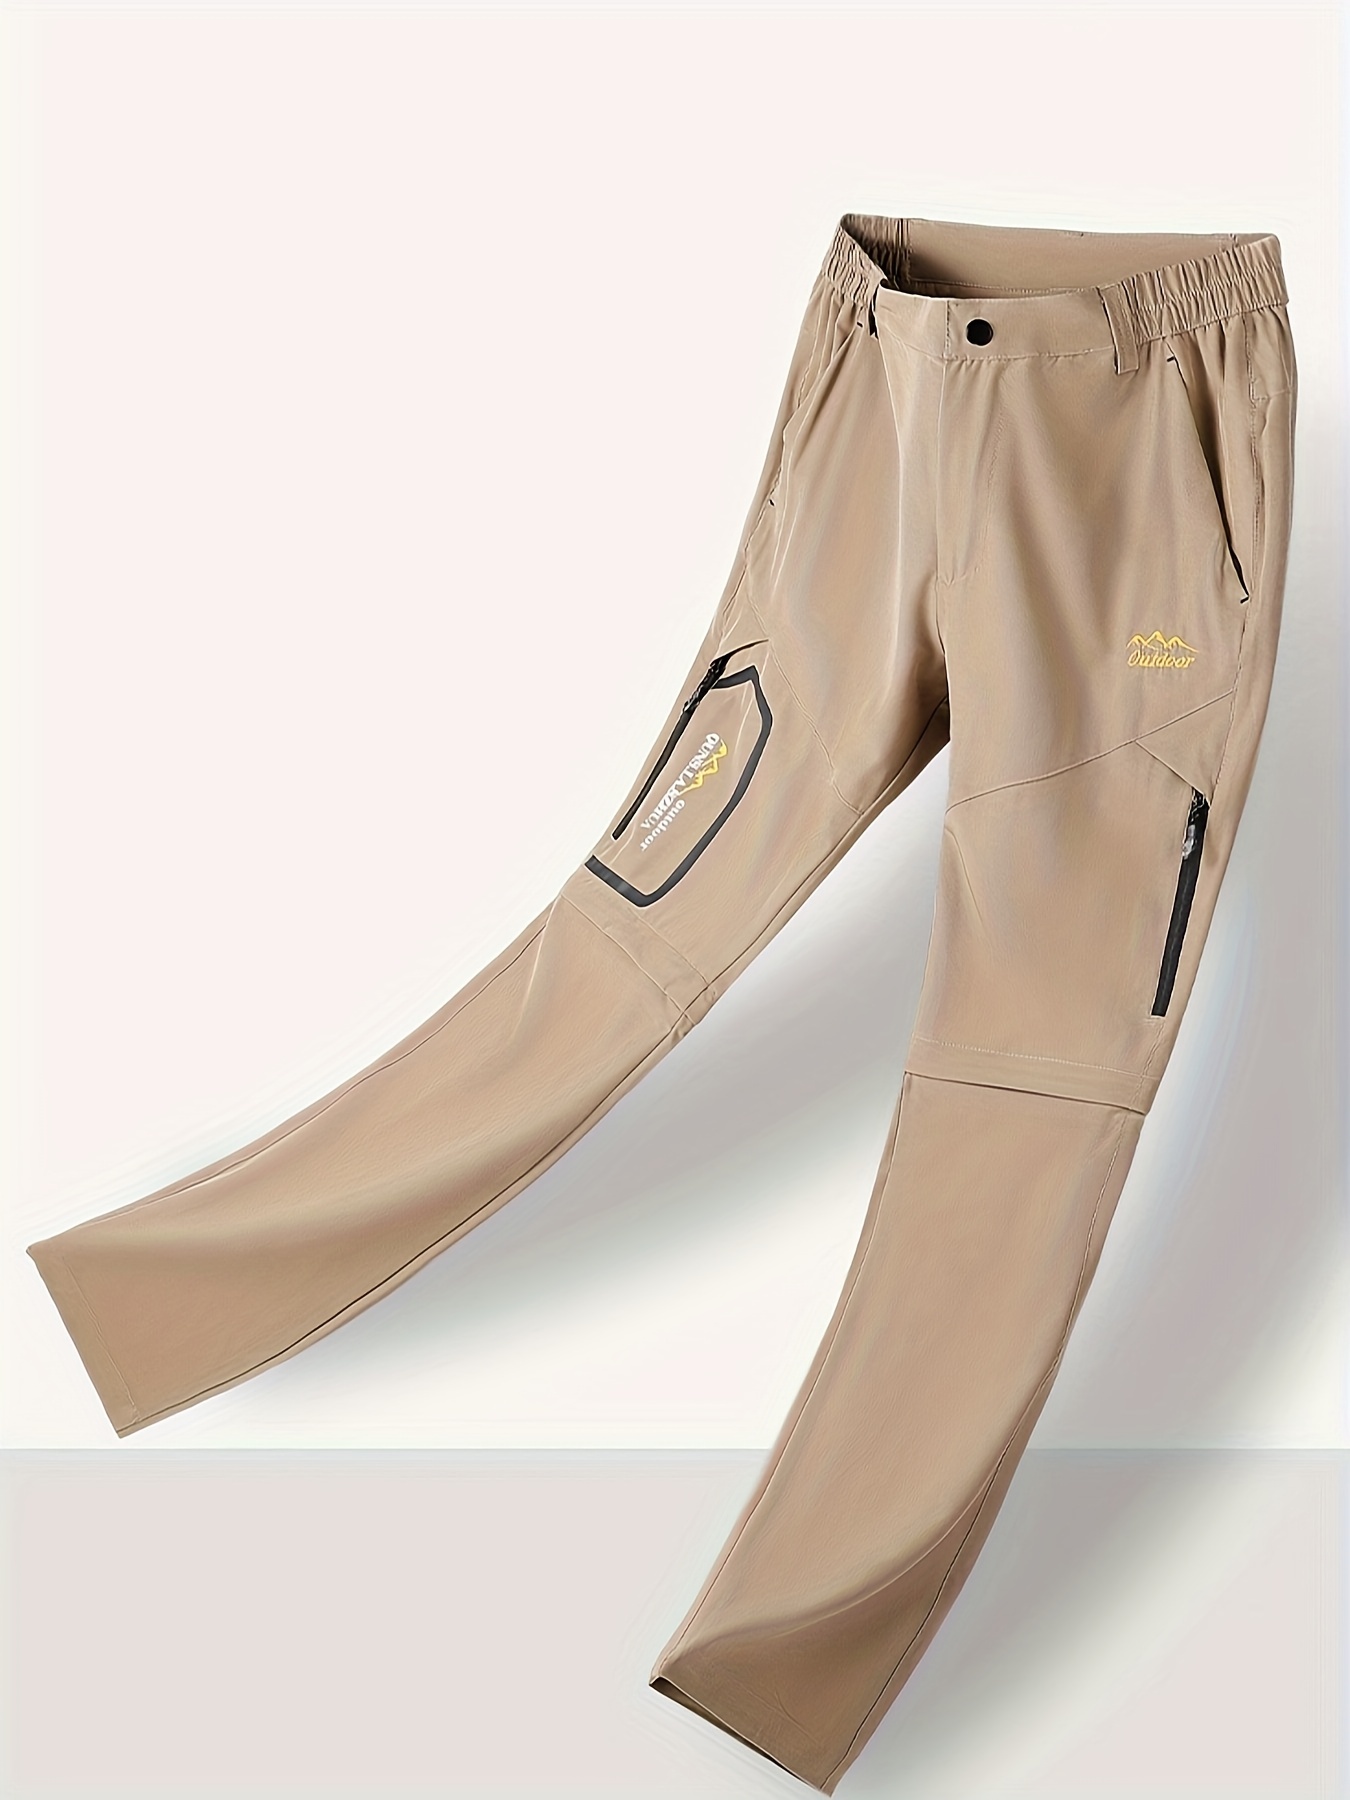 Hot Men's Hiking Pants Convertible Quick Dry Lightweight Zip-Off